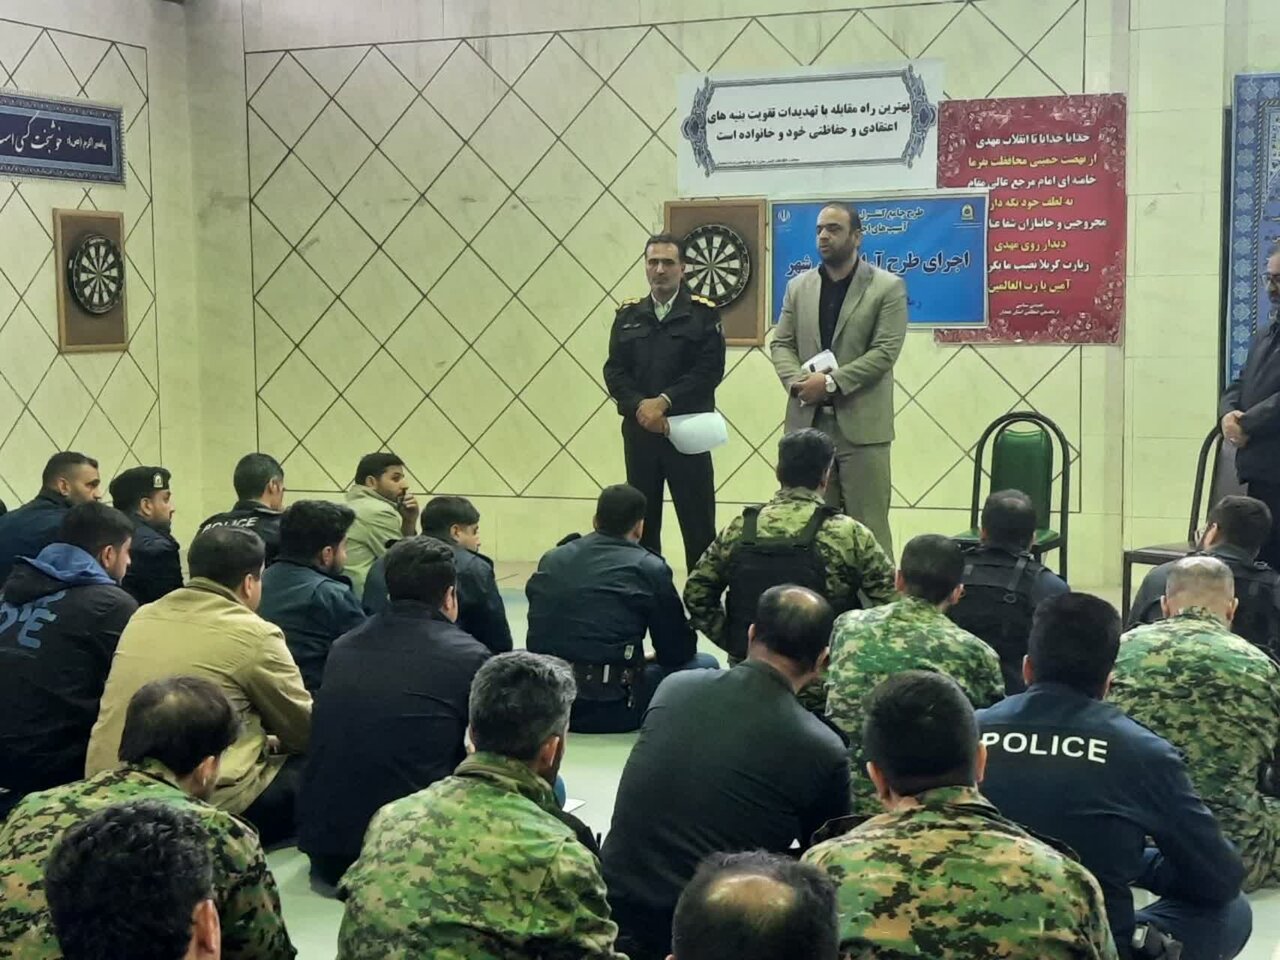 اجرای ششمین مرحله طرح" آرامش در شهر" پلیس مبارزه با مواد مخدر در همدان